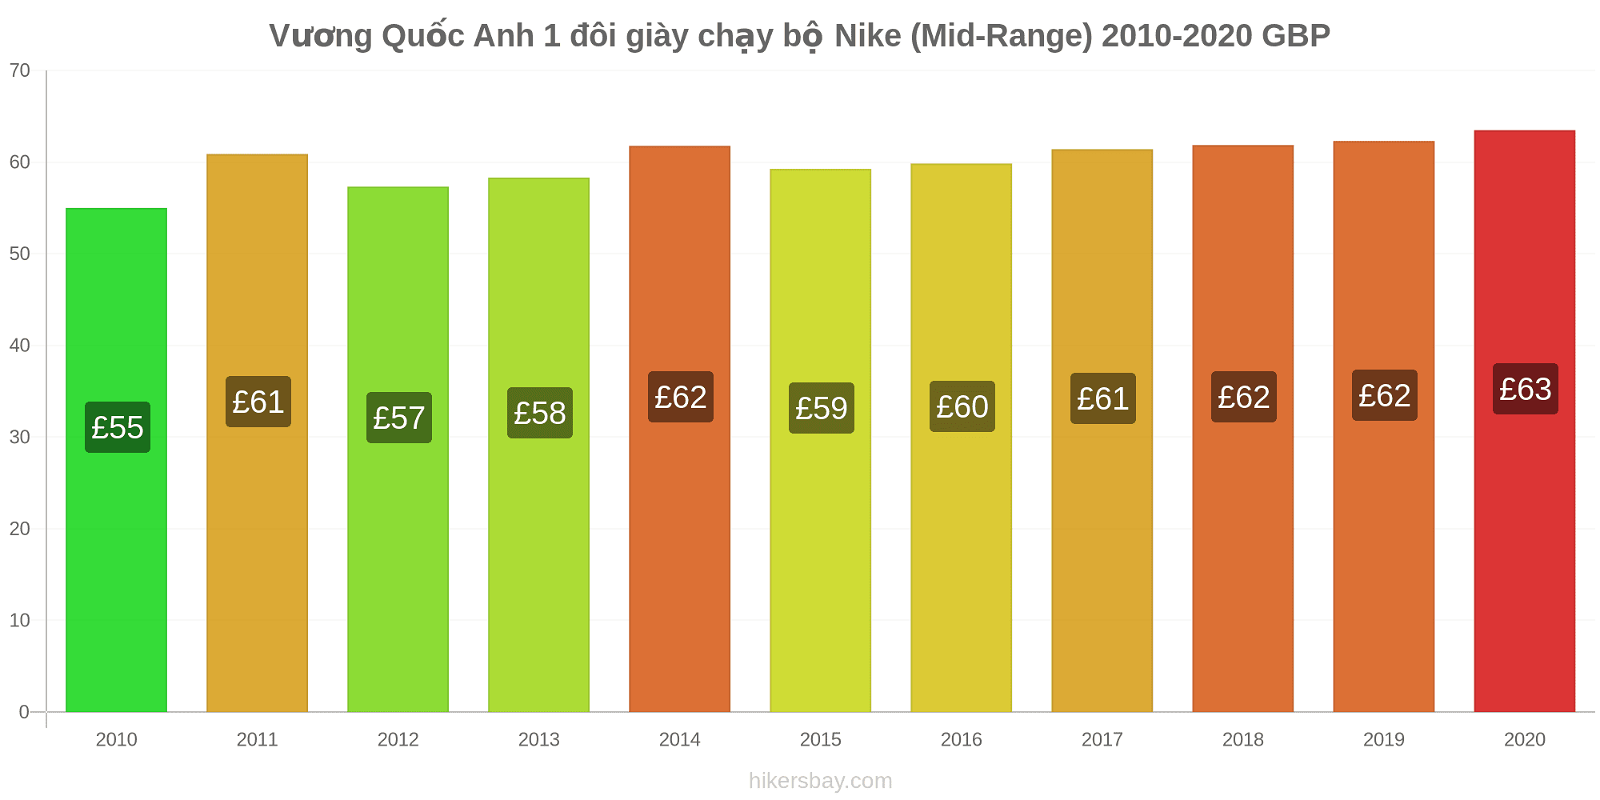 Vương Quốc Anh thay đổi giá 1 đôi giày chạy bộ Nike (Mid-Range) hikersbay.com